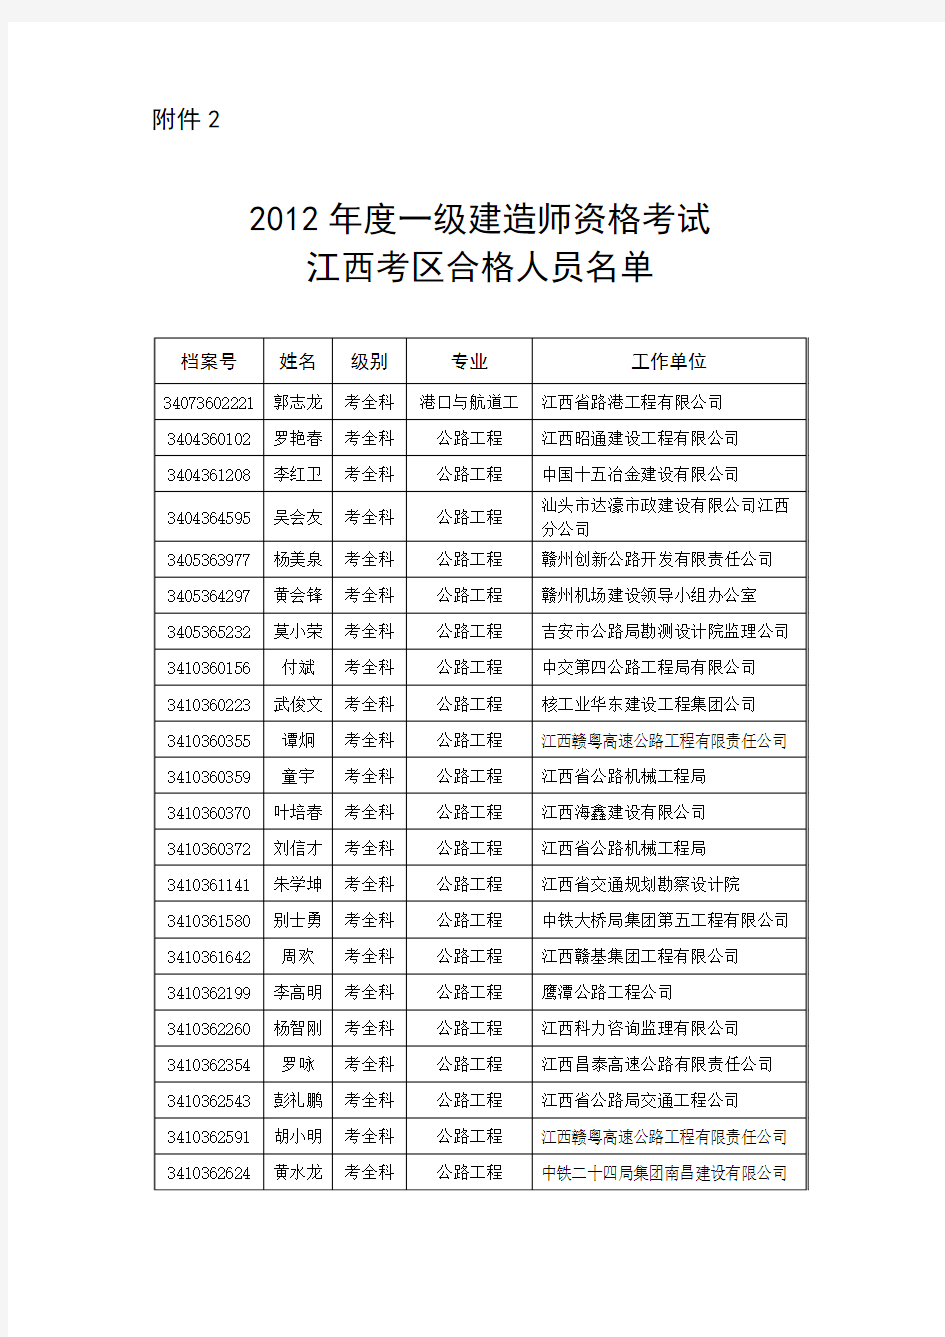 2012年度一级建造师资格考试江西考区合格人员名单